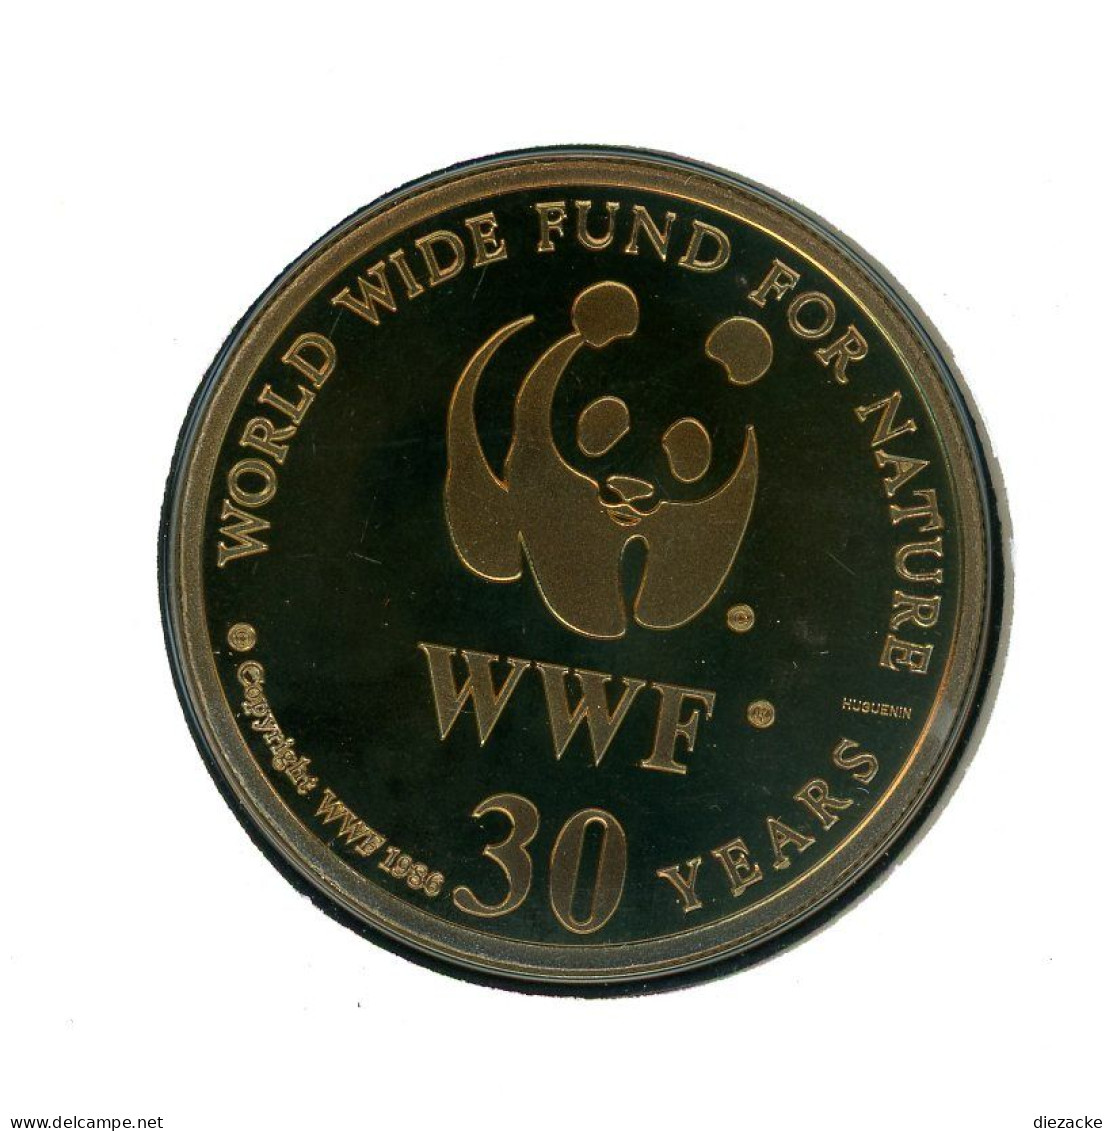 Senegal 1986 Numisbrief Medaille Dama Gazelle, 30 Jahre WWF Unzirkuliert (MD847 - Non Classés